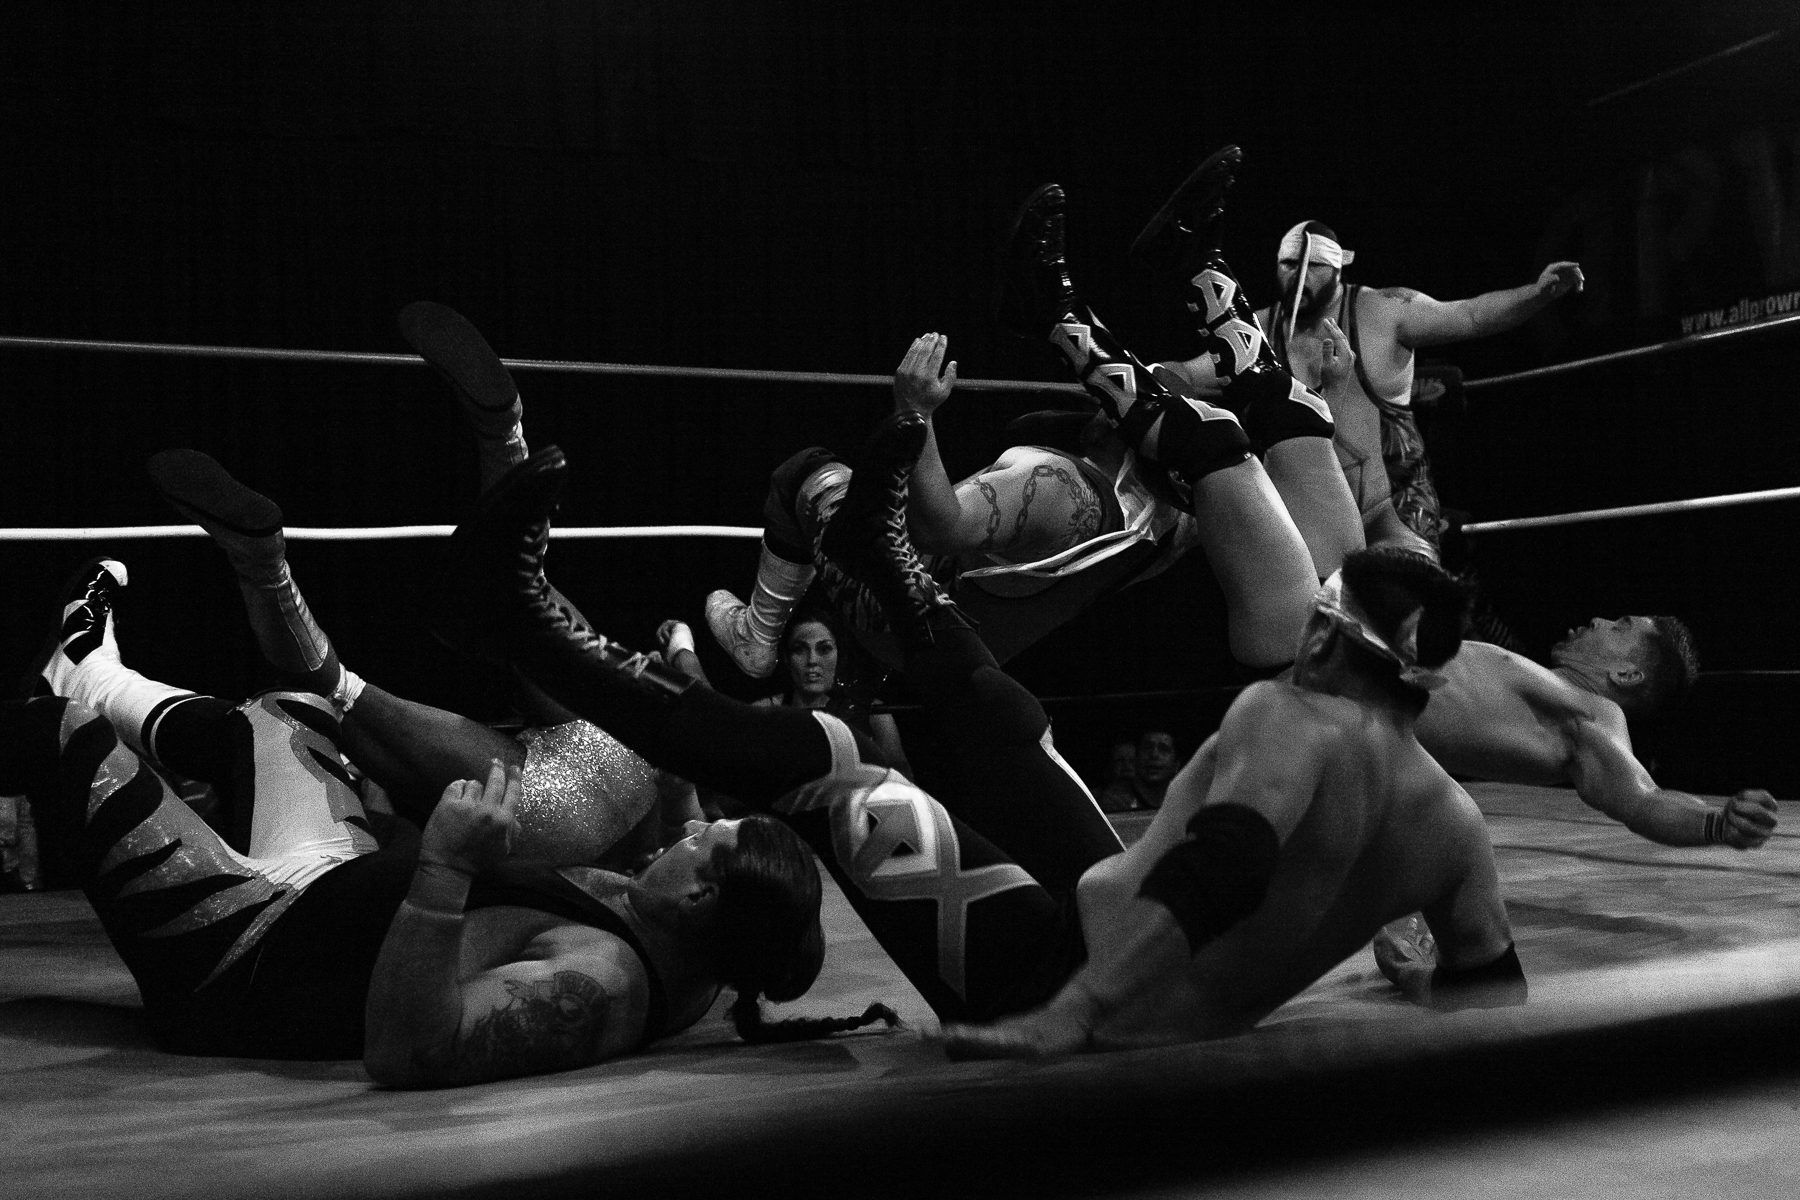 andre-hermann-wrestling-31.jpg